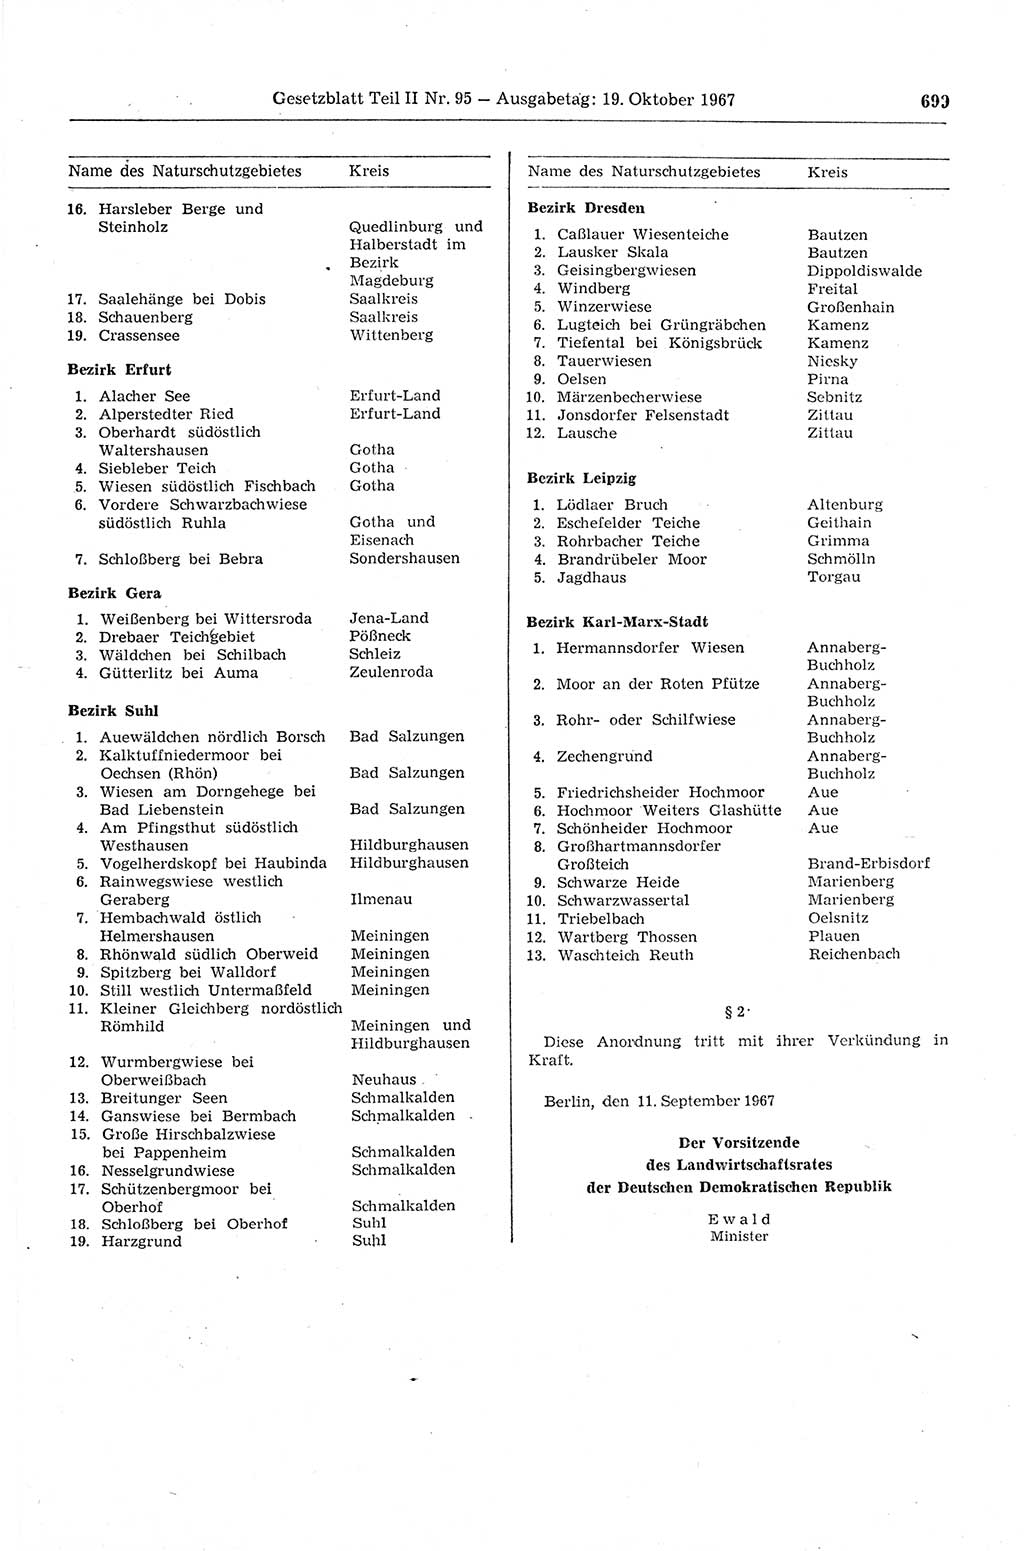 Gesetzblatt (GBl.) der Deutschen Demokratischen Republik (DDR) Teil ⅠⅠ 1967, Seite 699 (GBl. DDR ⅠⅠ 1967, S. 699)